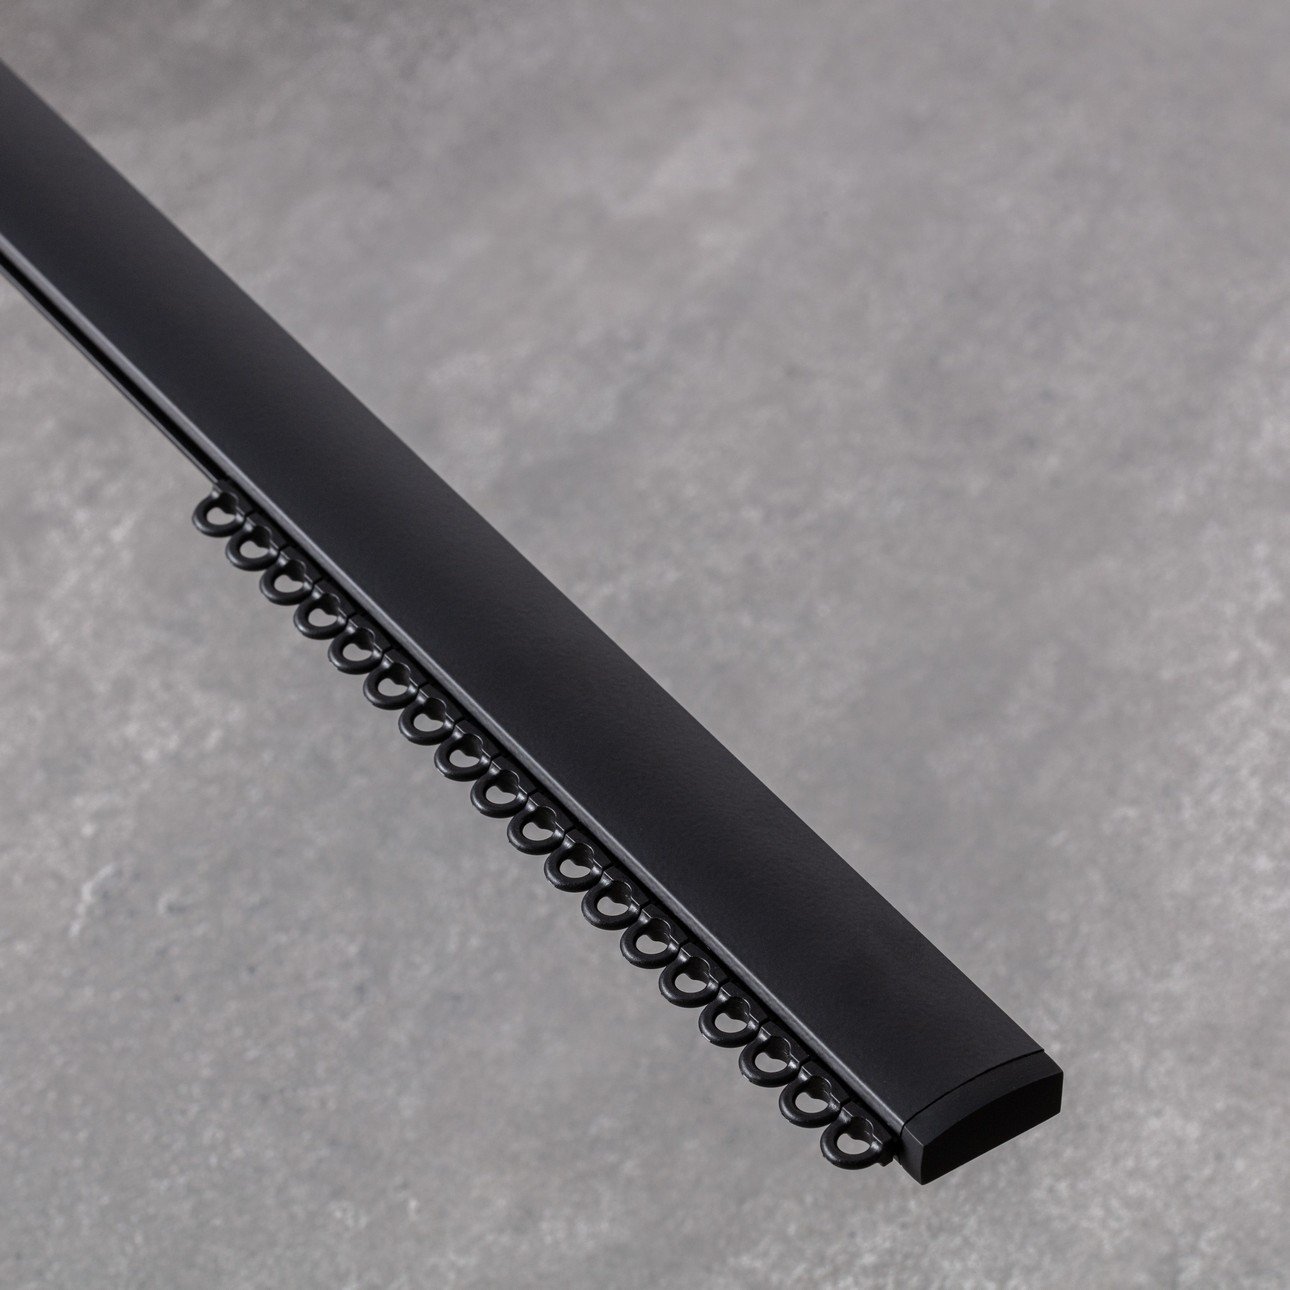 Aluminium-Gardinenschiene Premium einläufig 150 cm schwarz im Set, 150 cm